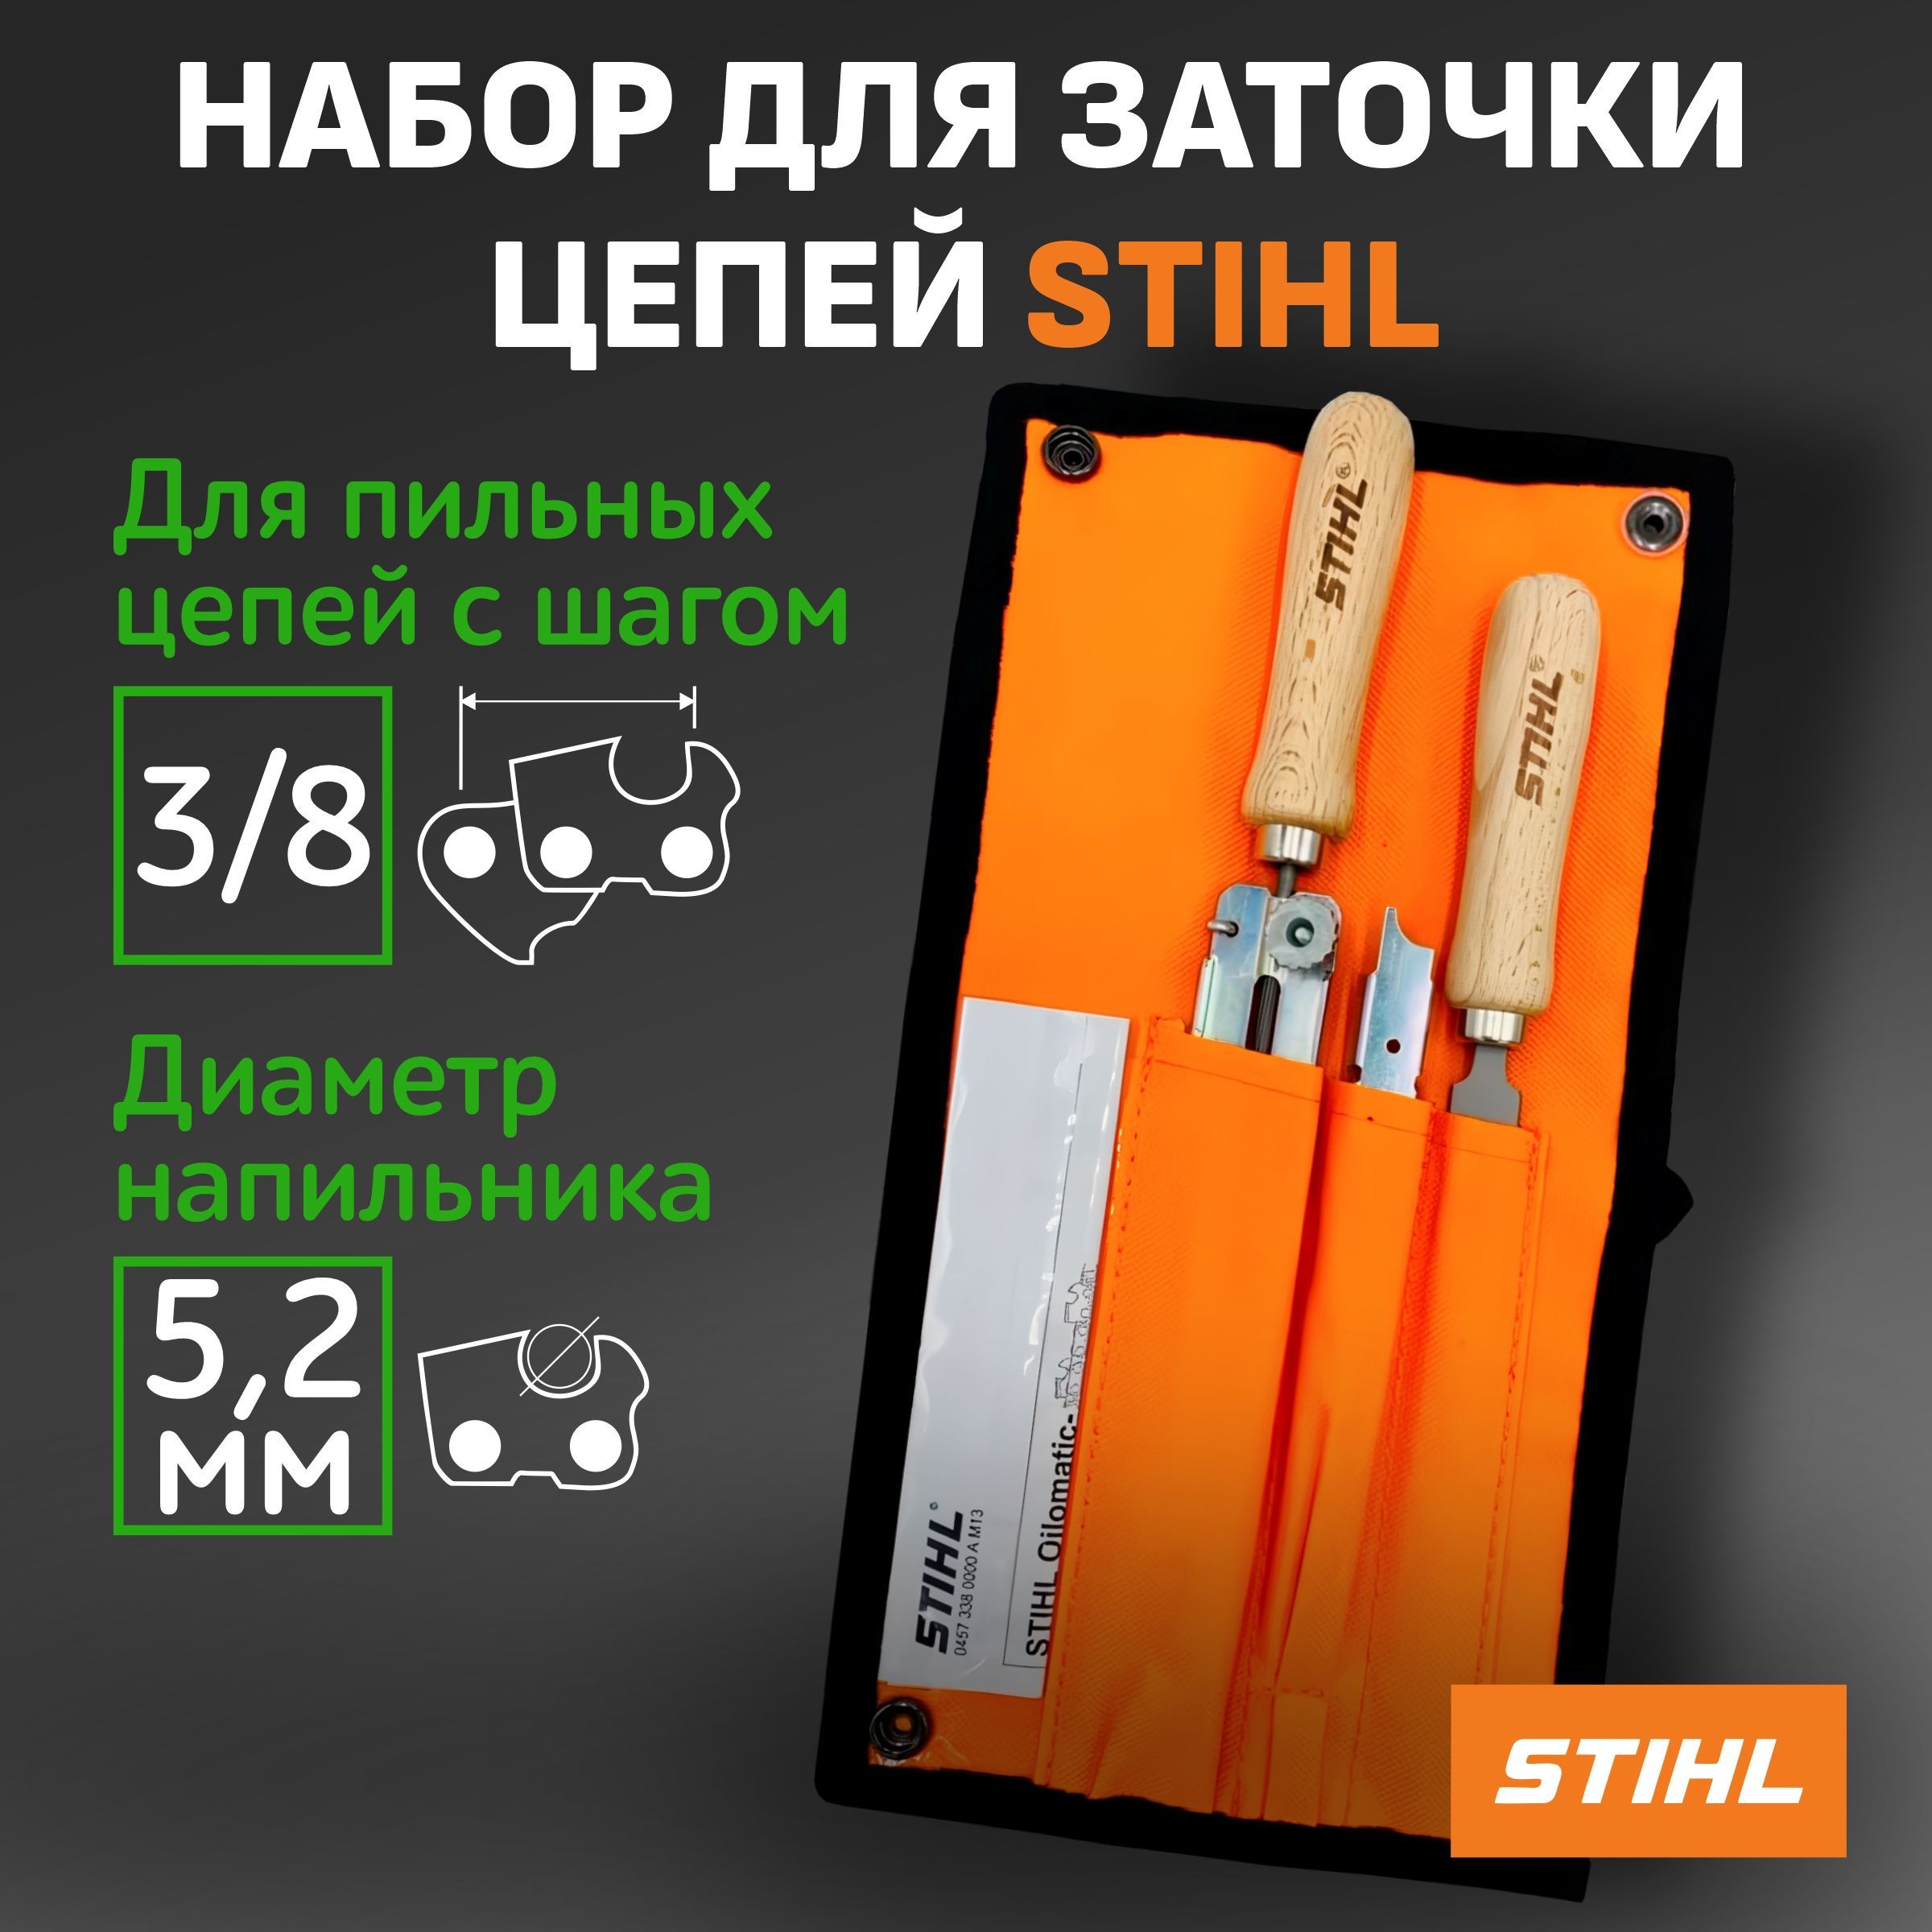 Набор штиль. Направляющая для державки Stihl 4,8мм, .325". Заточный набор для Stihl 230. Дополнительное приспособление, комплект Stihl для sr200 ULV (42410071009).